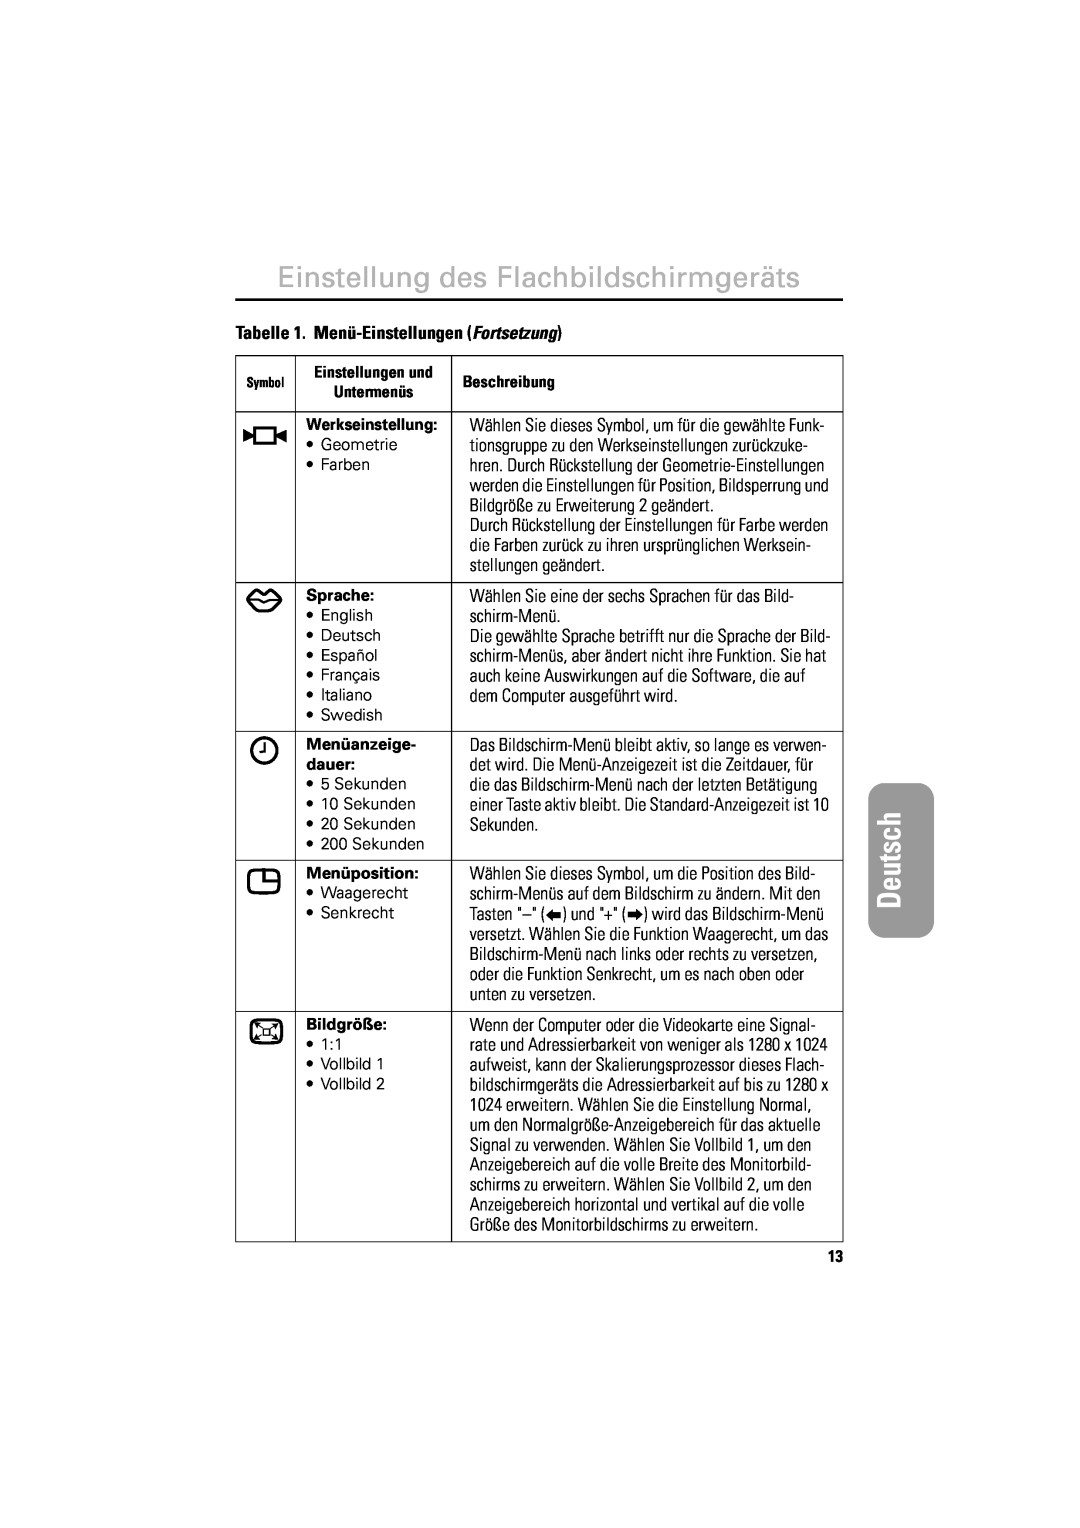 Samsung DV18MSPAN/EDC Bildgröße zu Erweiterung 2 geändert, stellungen geändert, schirm-Menü, dem Computer ausgeführt wird 